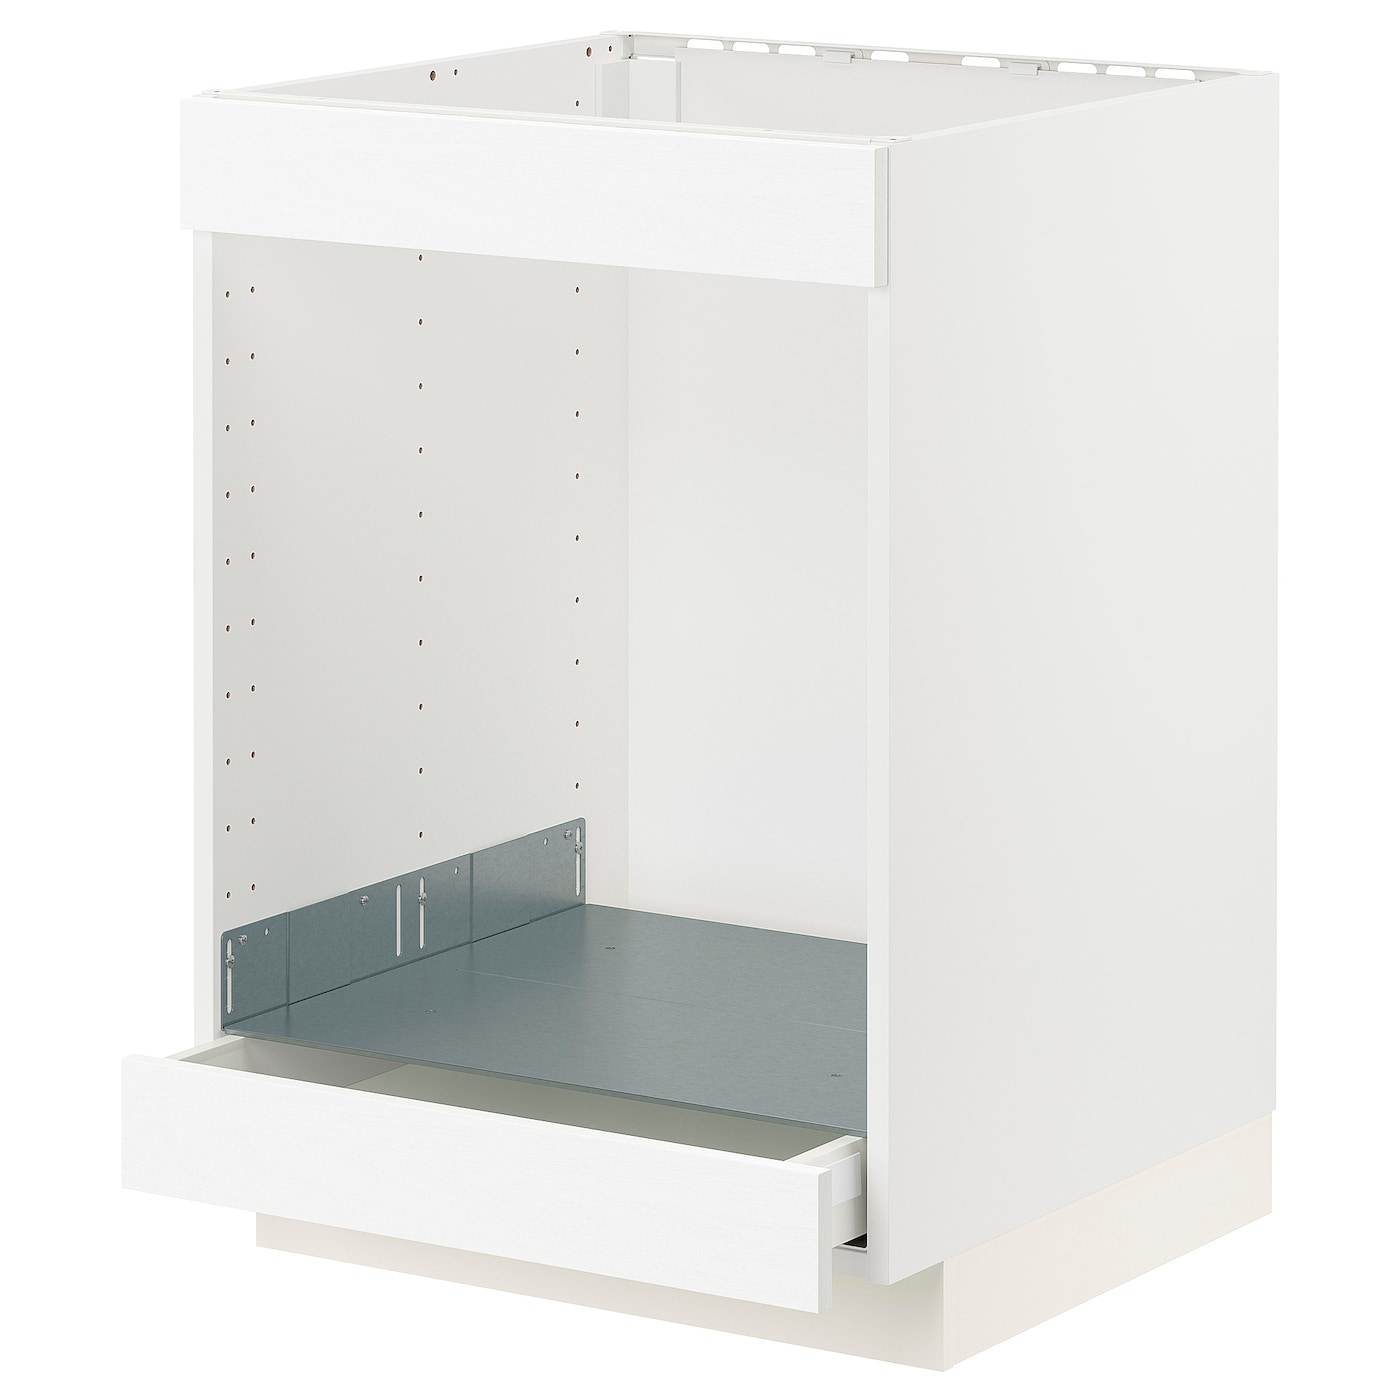 Каркас для плиты с ящиками - METOD / MAXIMERA IKEA/ МЕТОД / МАКСИМЕРА ИКЕА, 88х60 см, белый